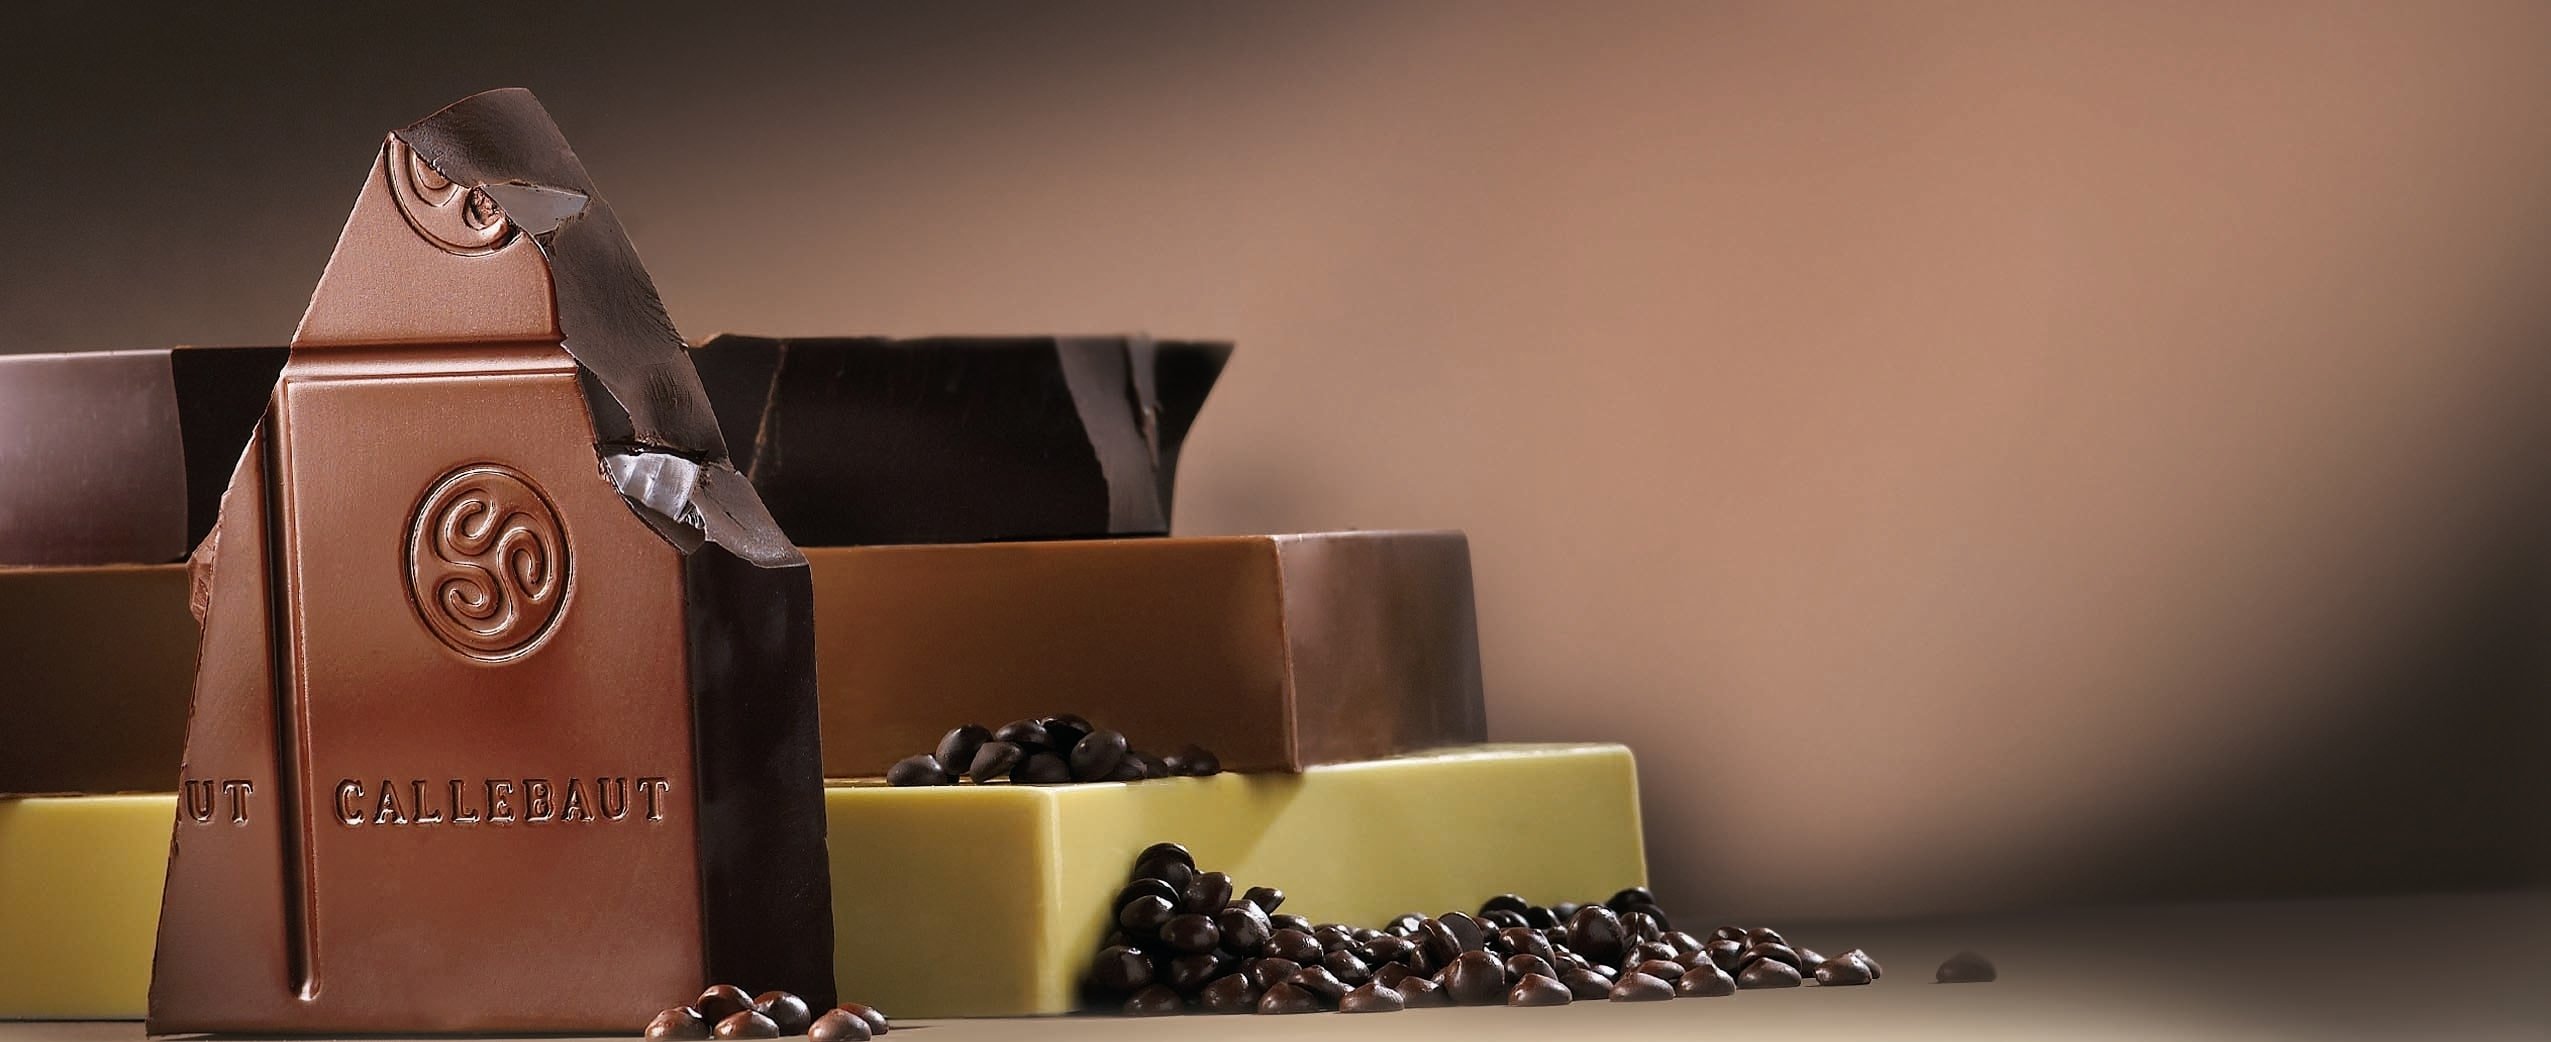 Callebaut Chocolate Blocks-min